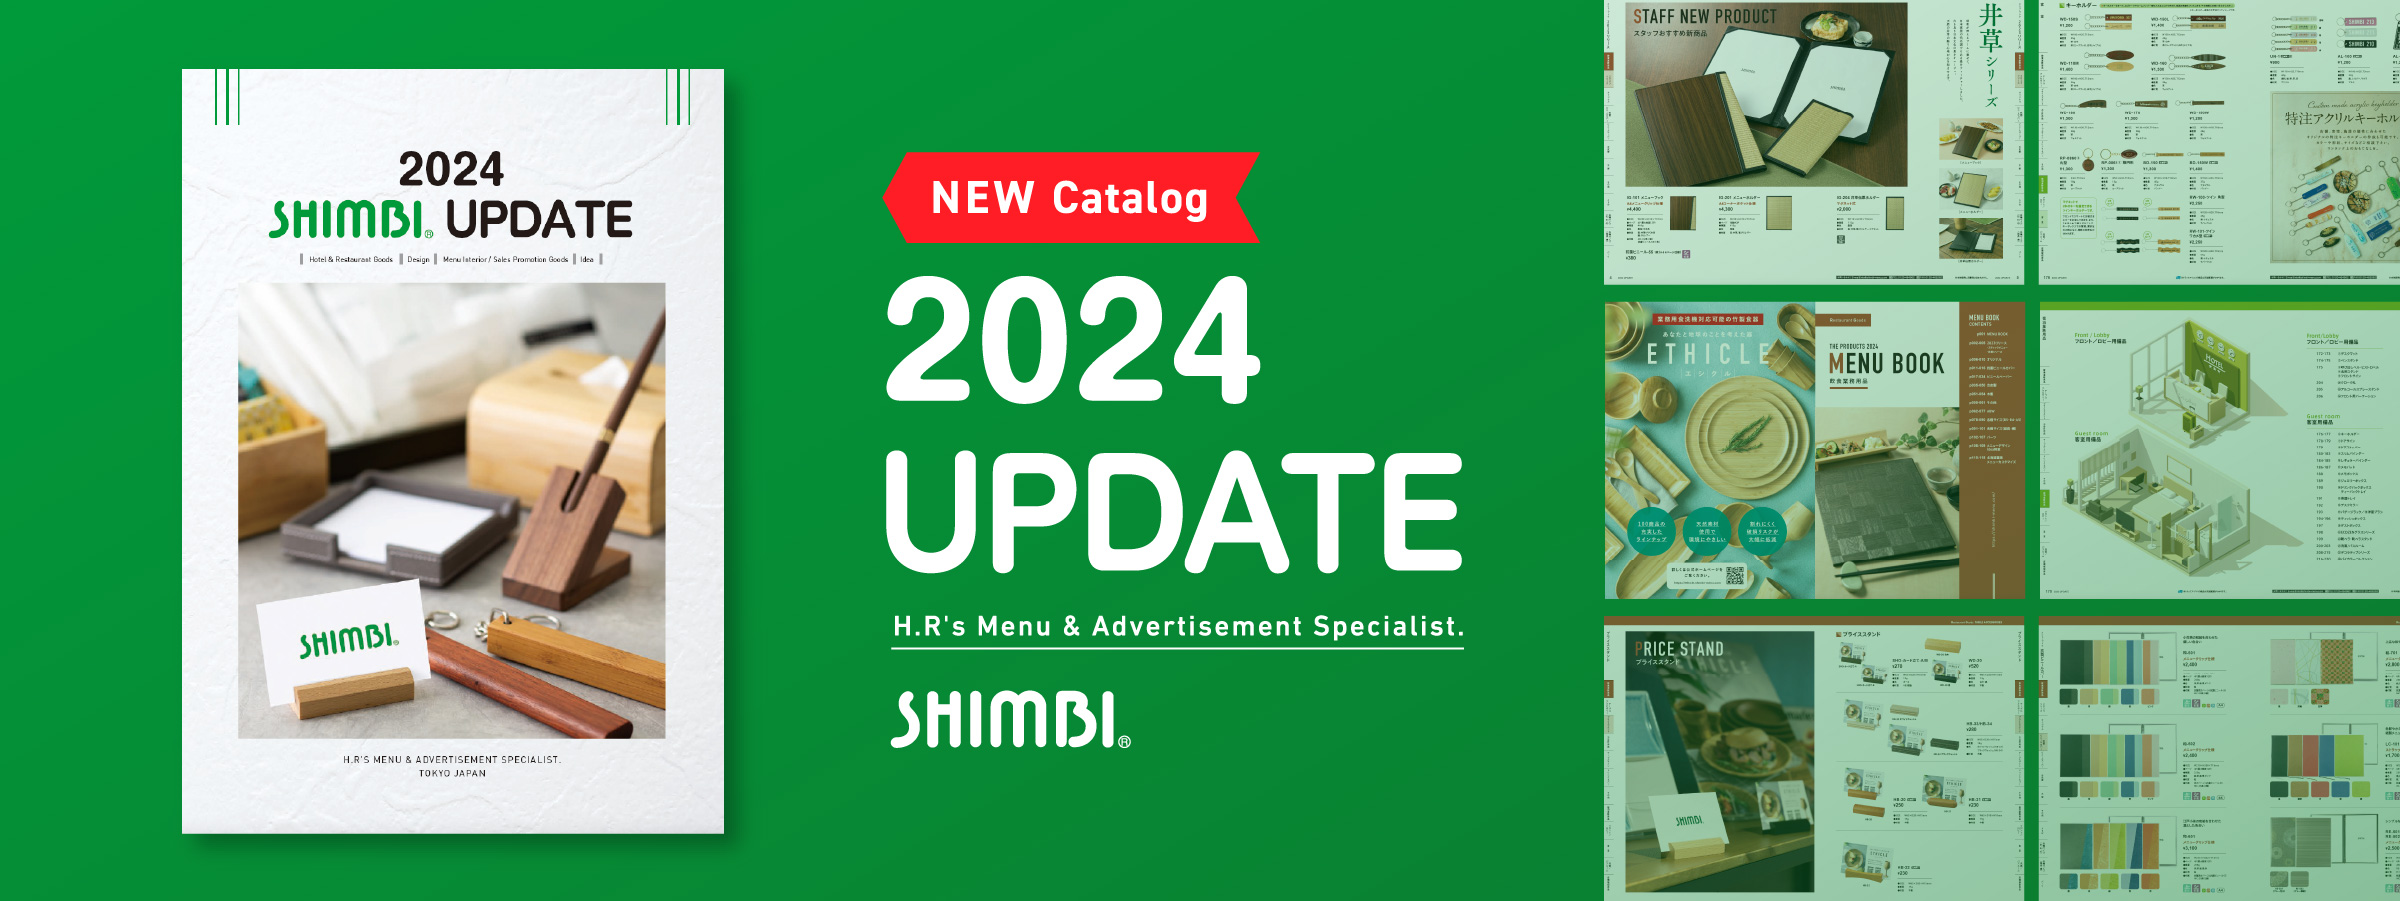 2024 SHIMBI UPDATE